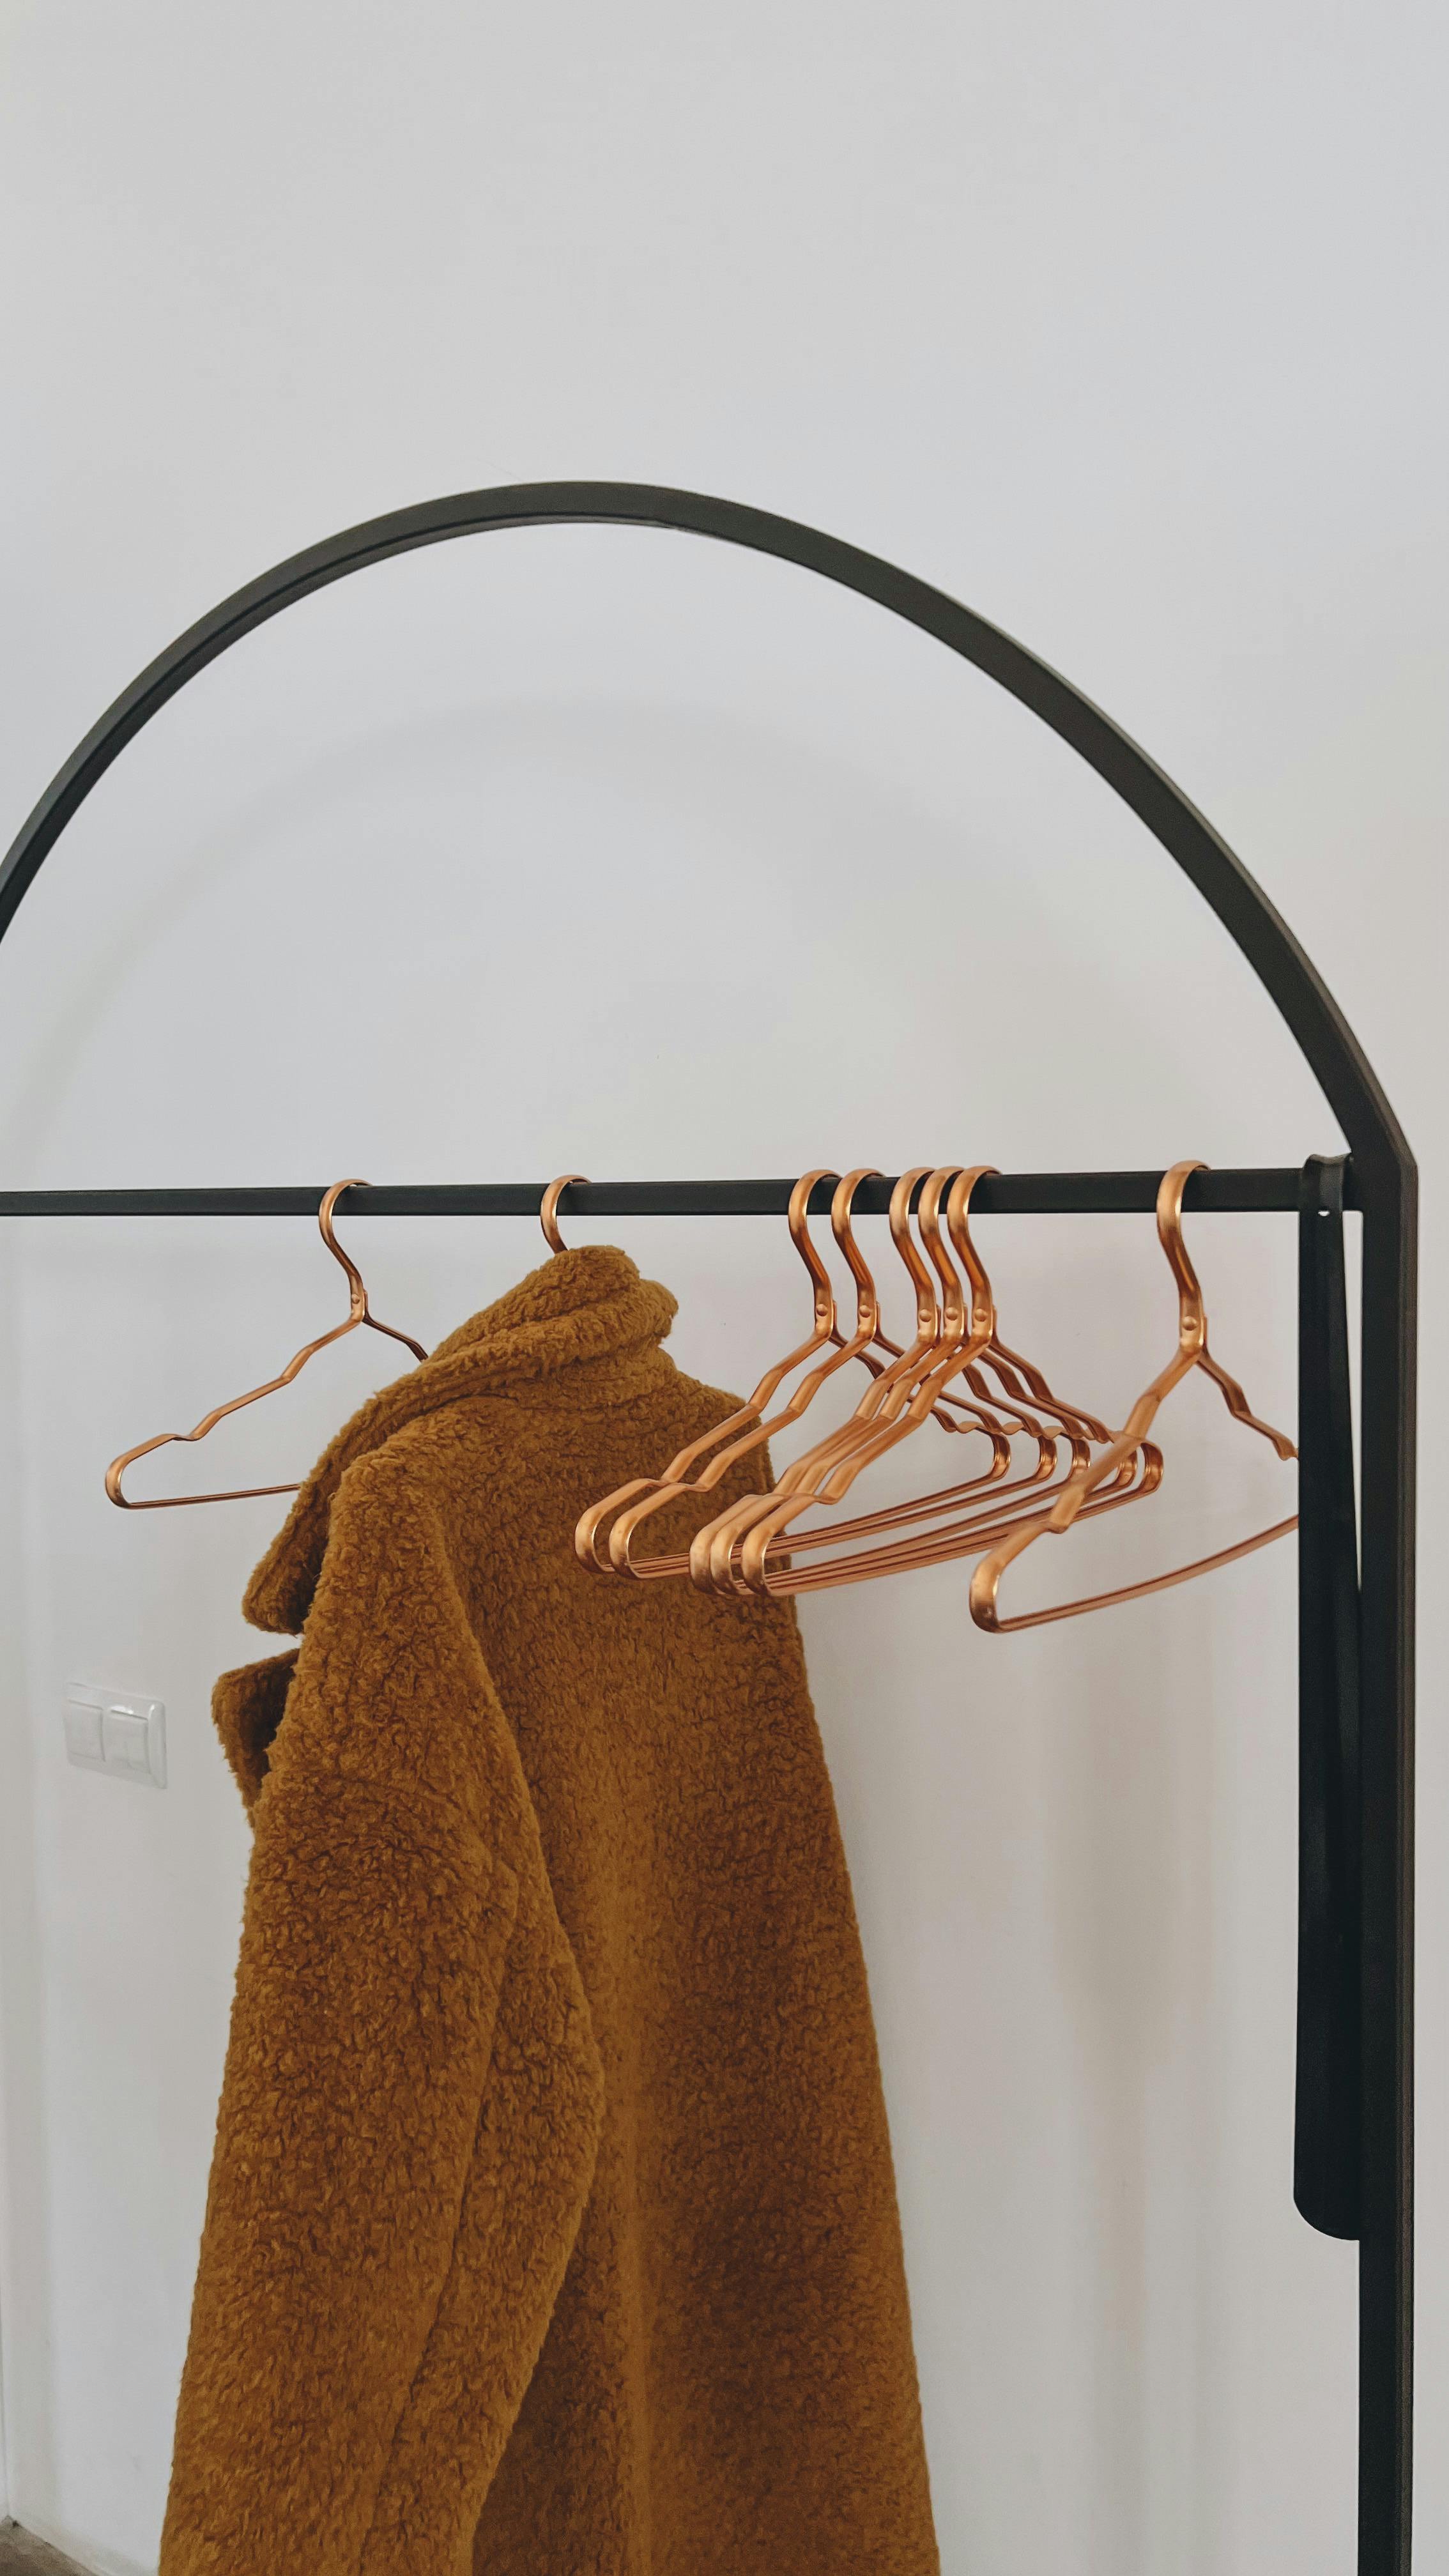 A coat hanger | Source: Pexels